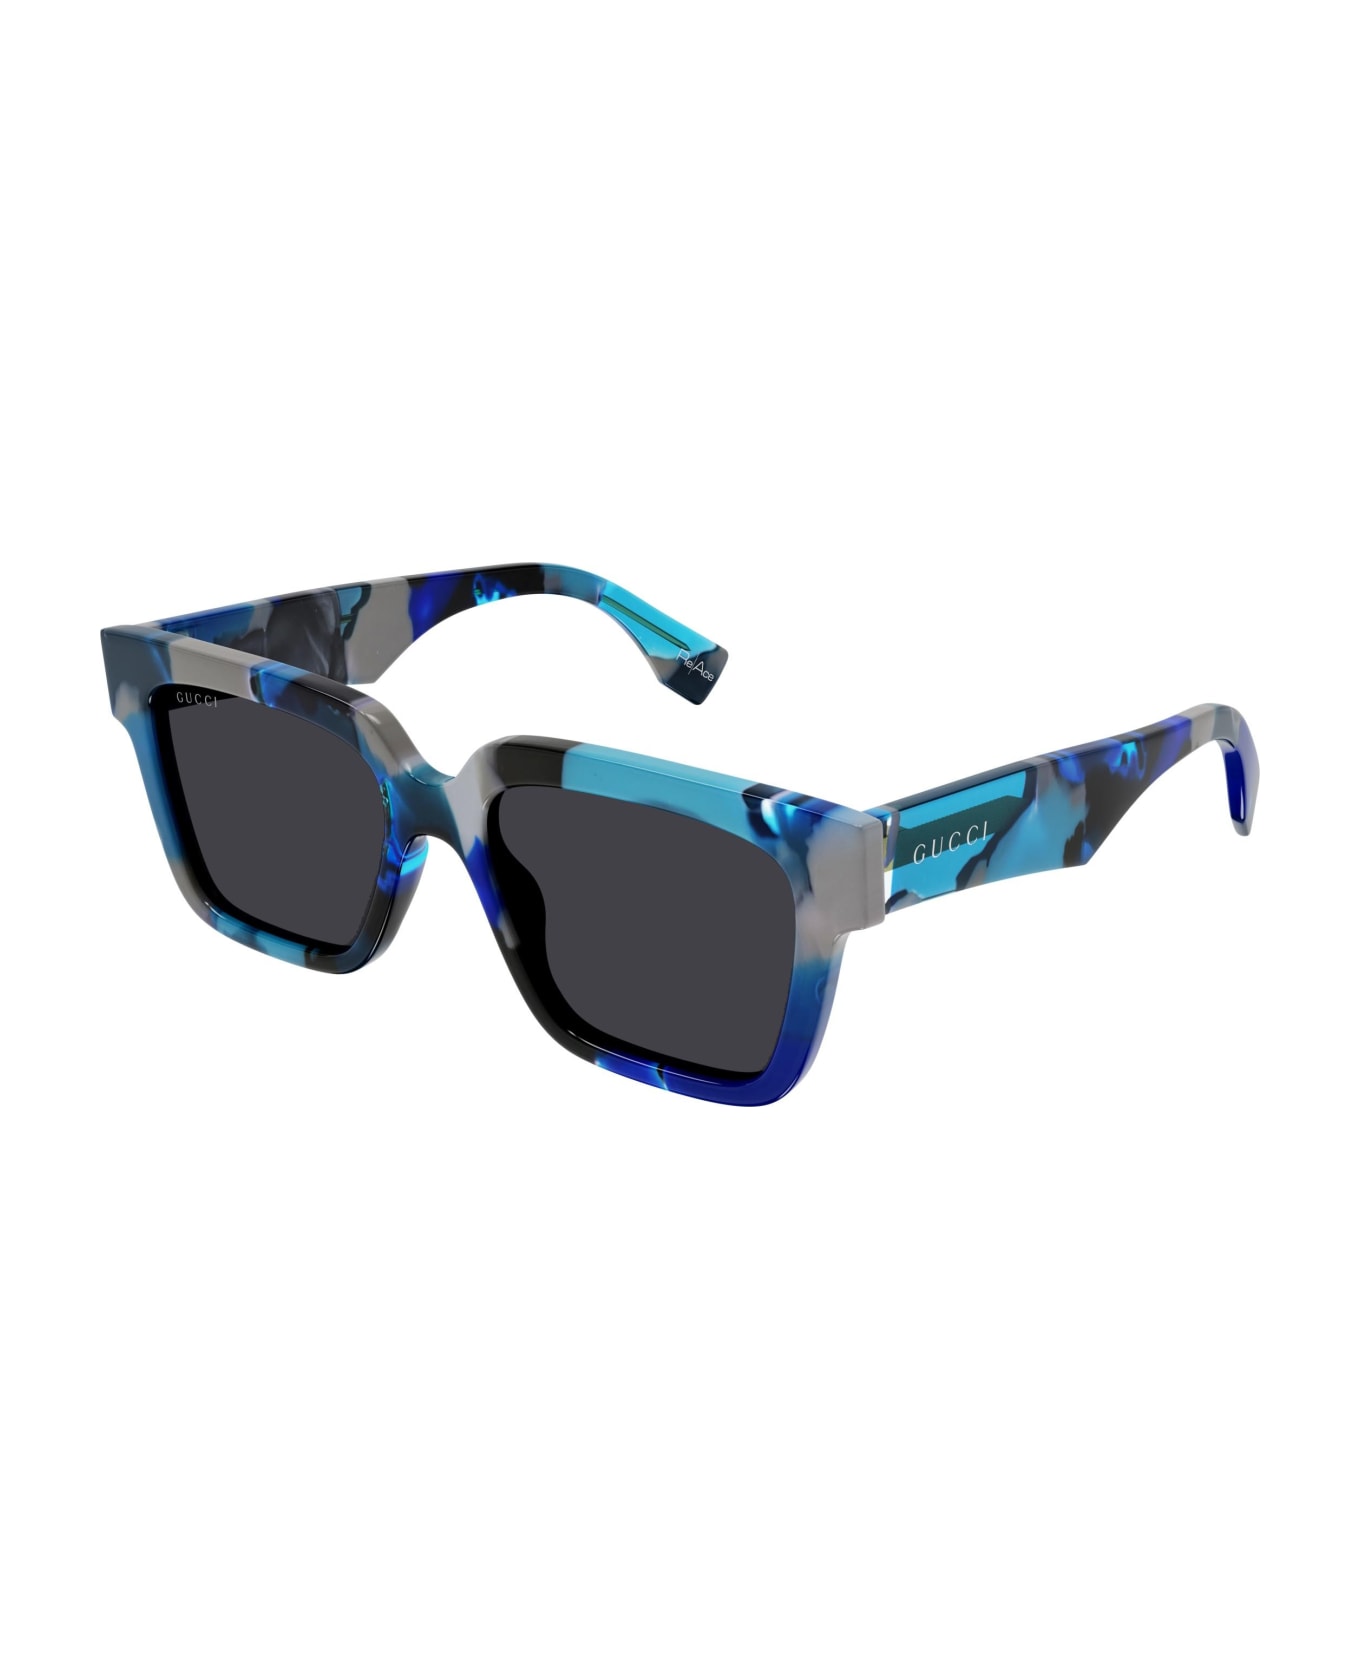 Gucci Eyewear Sunglasses - Blu/Grigio